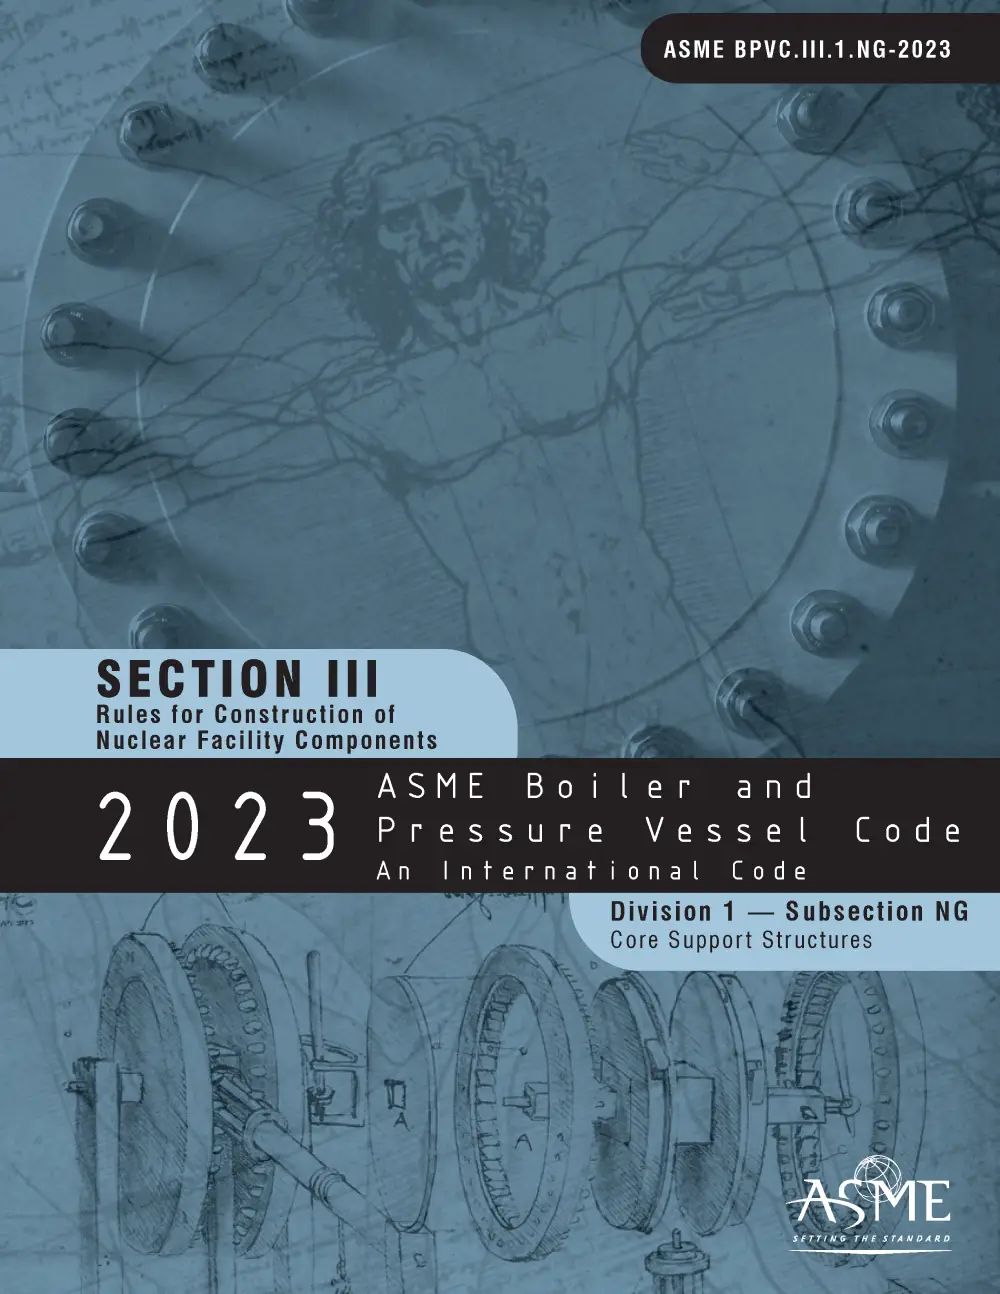 ASME BPVC-III NG 2023 EDITION